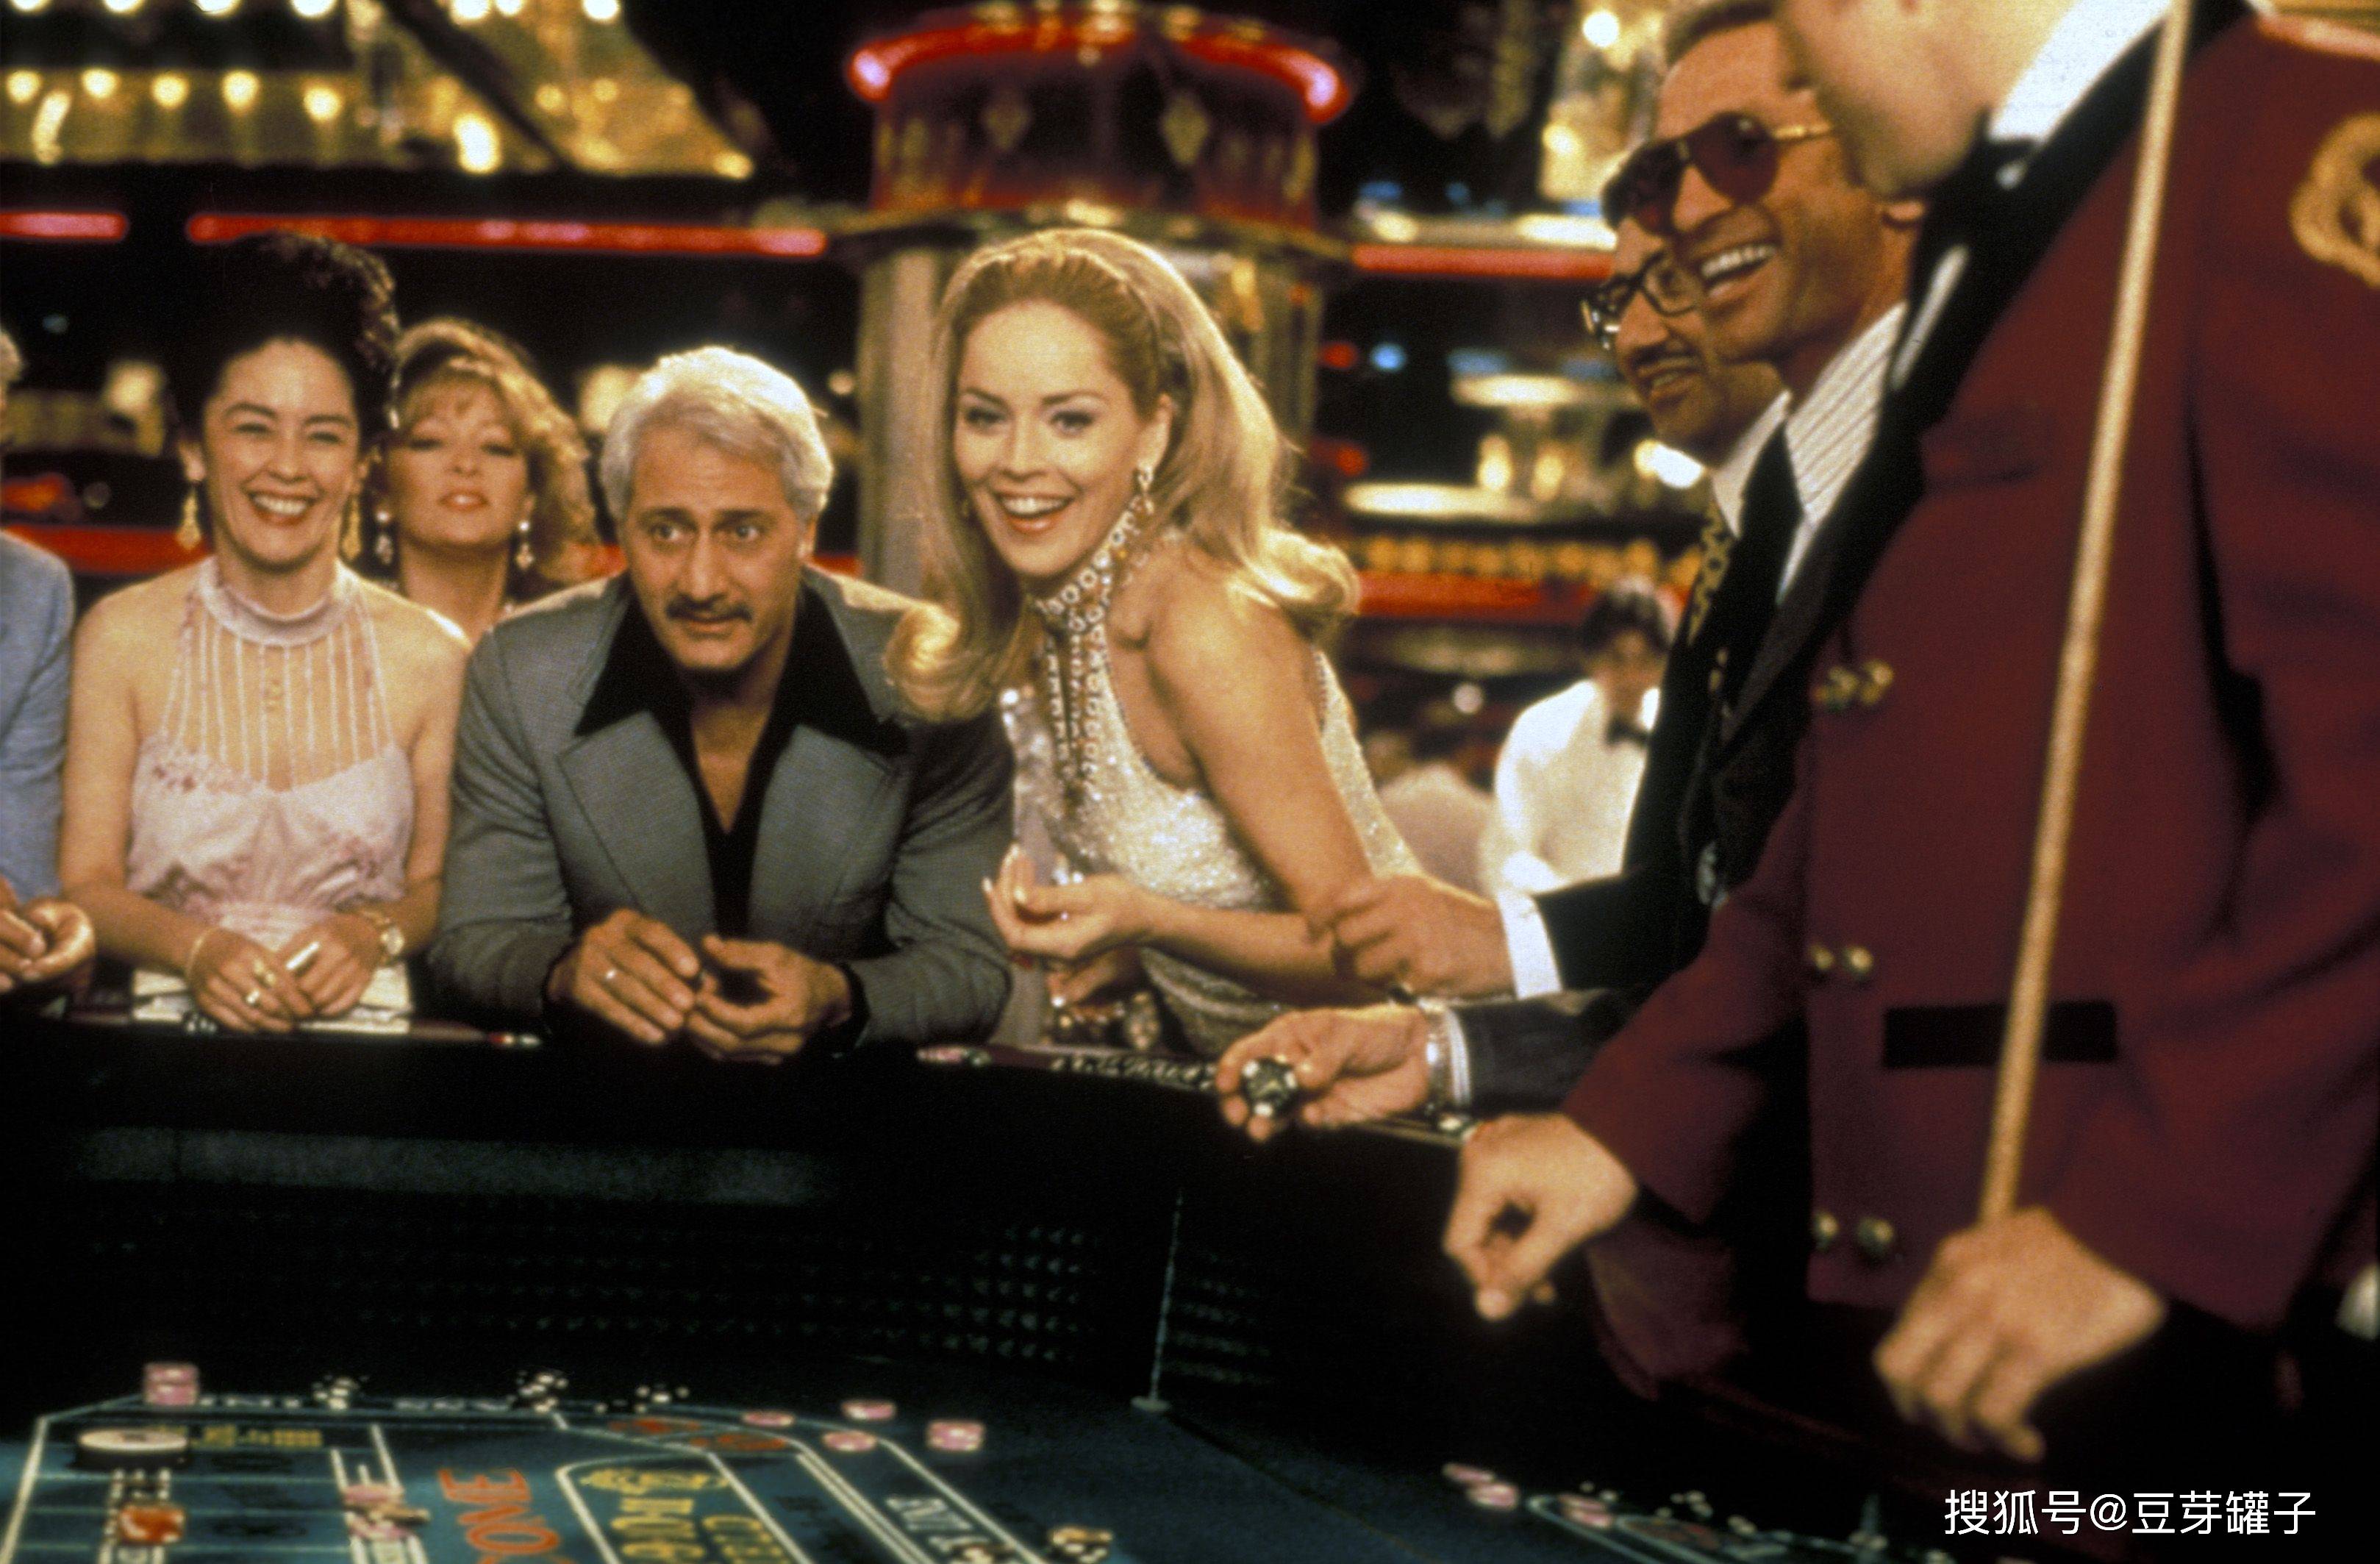 67《赌城风云》,揭开赌场内幕的史诗电影,复杂又精致的经典之作